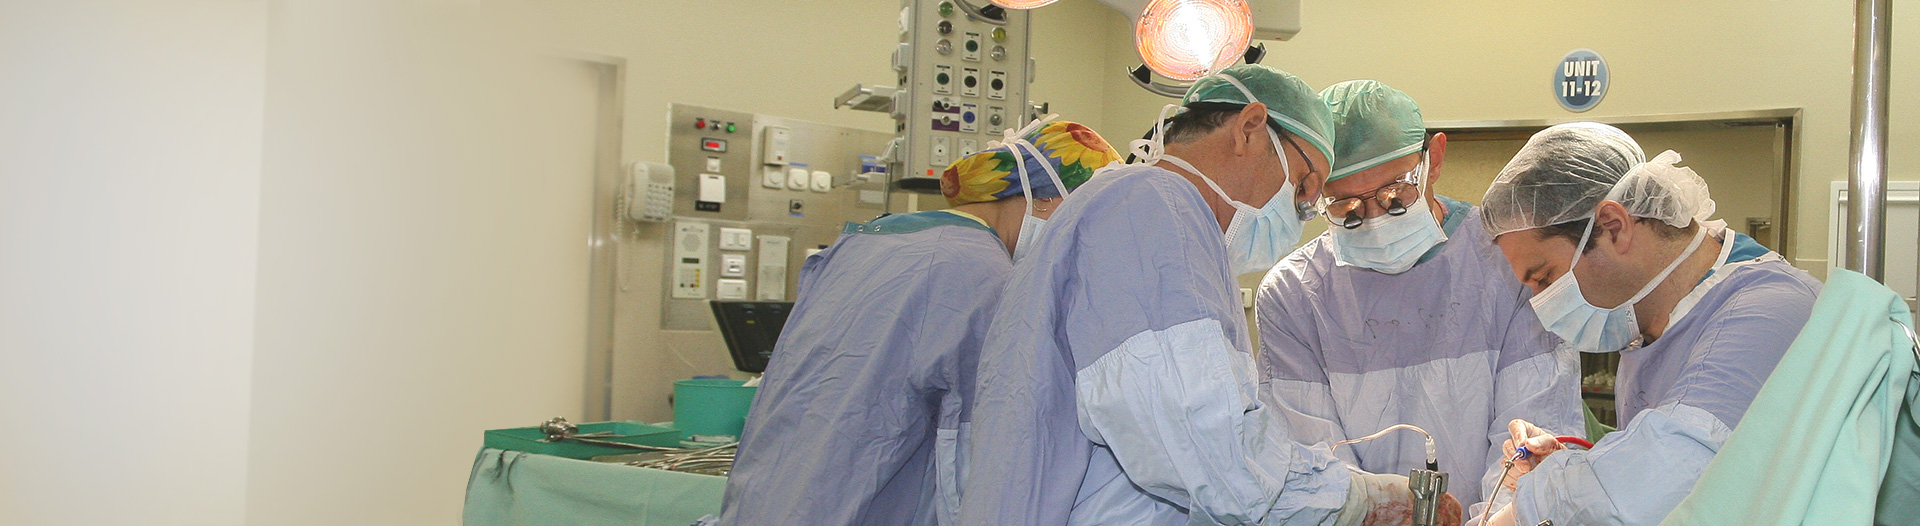 Анестезия под контролем ультразвука в Израиле